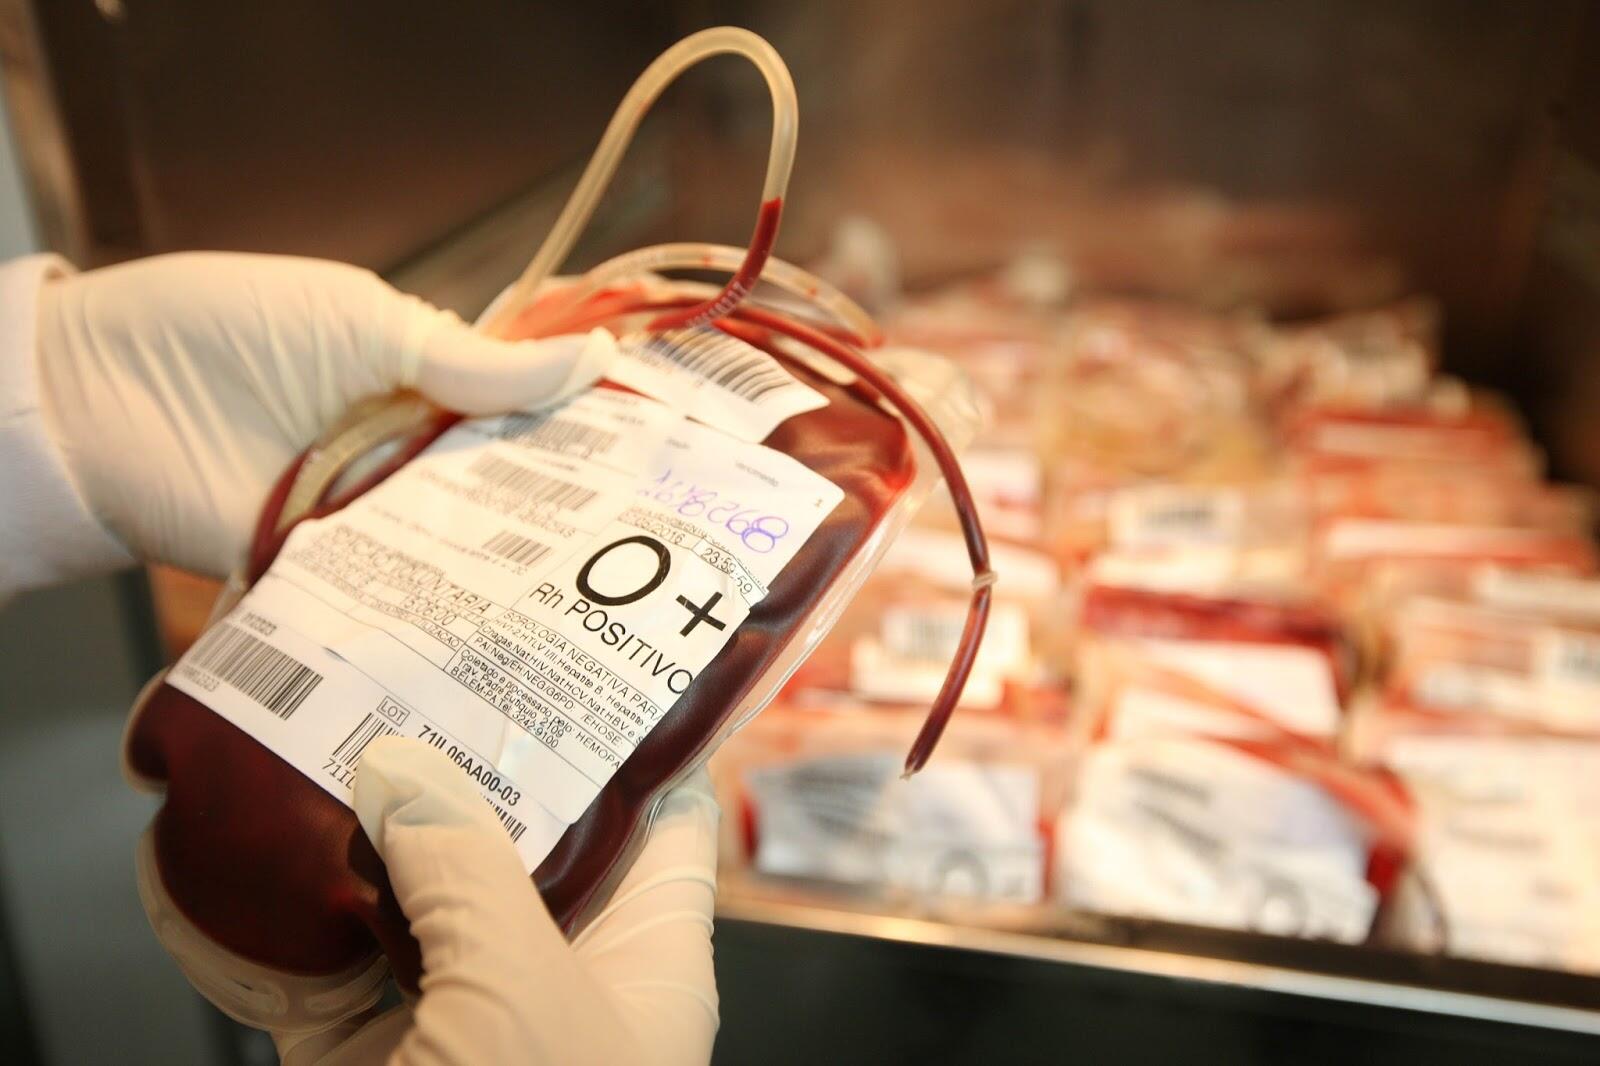 Fundação pede doação de sangue antes do Carnaval. Veja como ajudar!